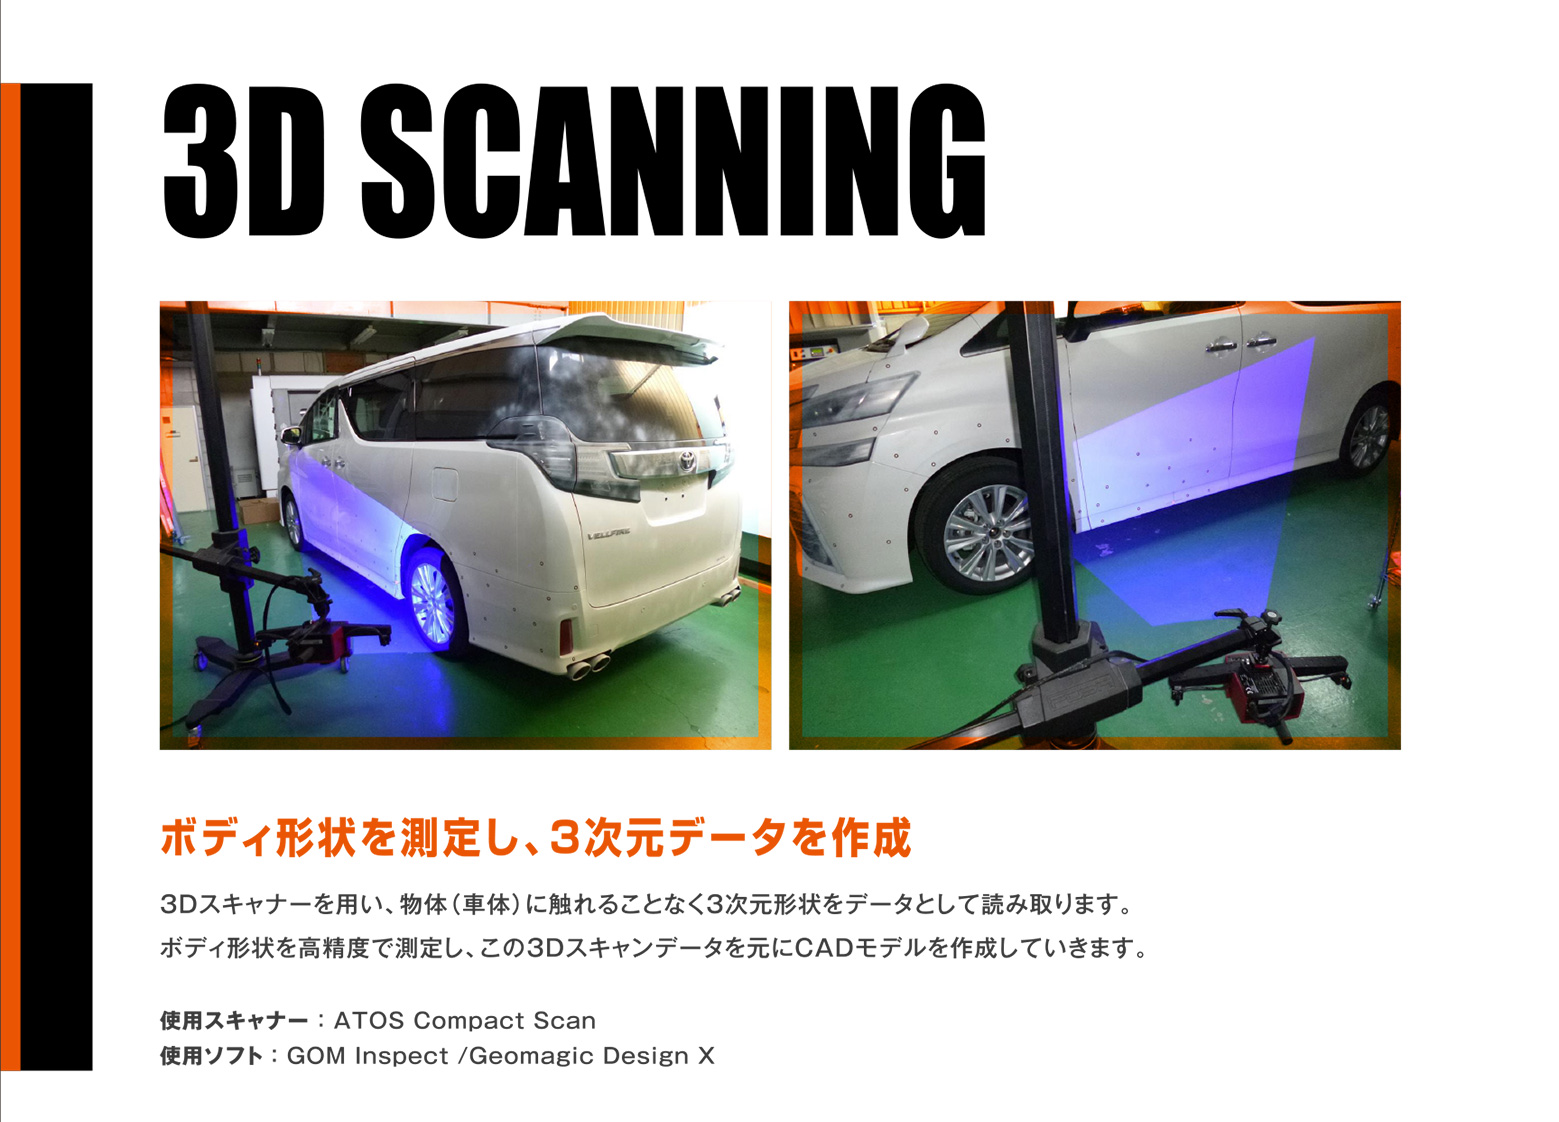 3D SCANNING 3D SCANNING 3Dスキャナーを用い、物体（車体）に触れることなく3次元形状をデータとして読み取ります。ボディ形状を高精度で測定し、この3Dスキャンデータを元にCADモデルを作成していきます。使用スキャナー ： ATOS Compact Scan 使用スキャナー ： ATOS Compact Scan